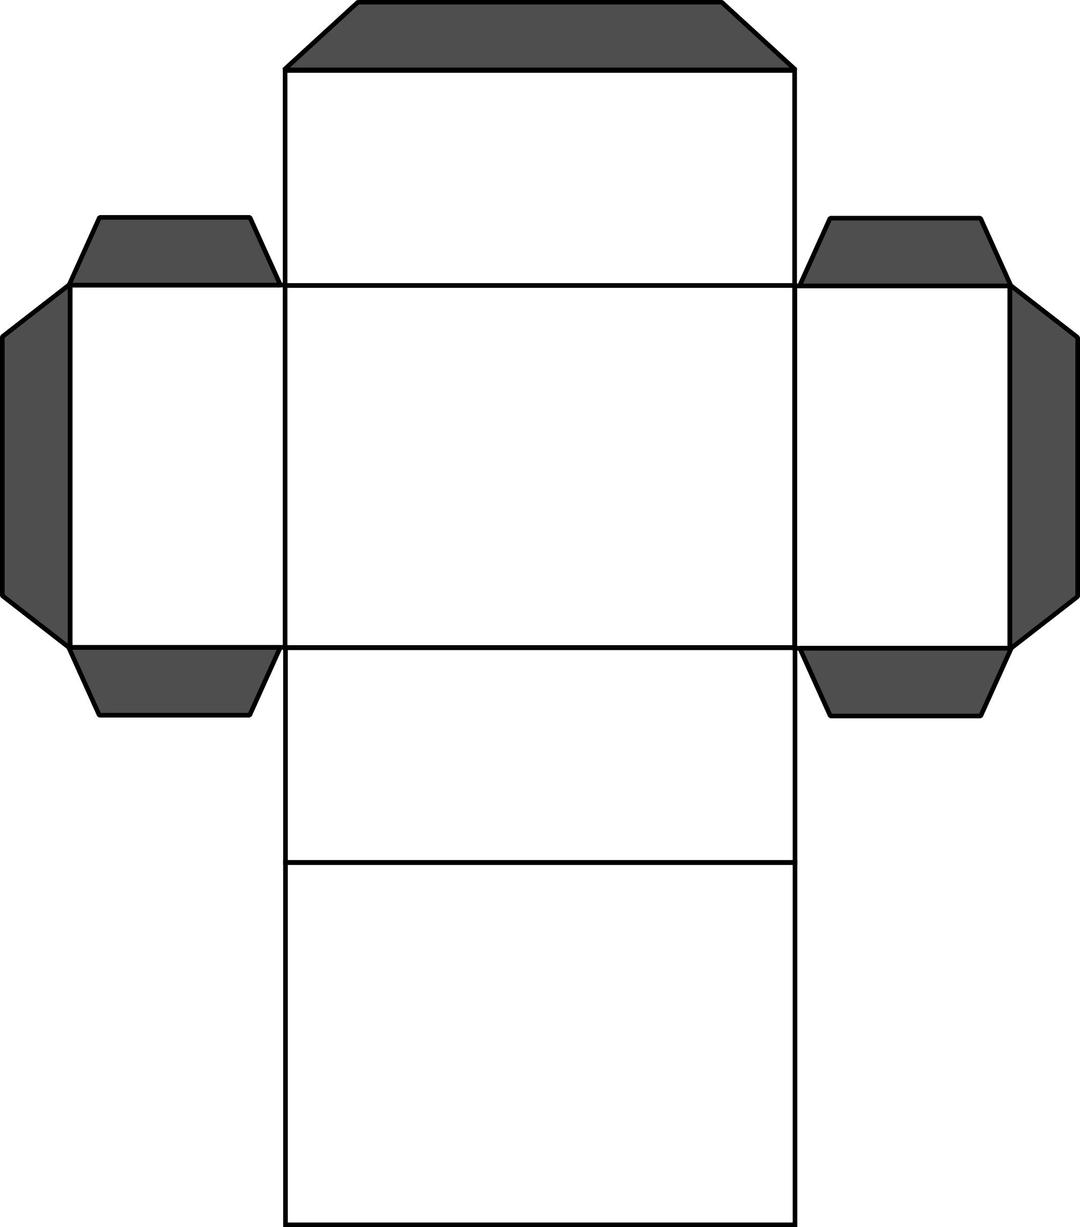 Cuboid grid png transparent